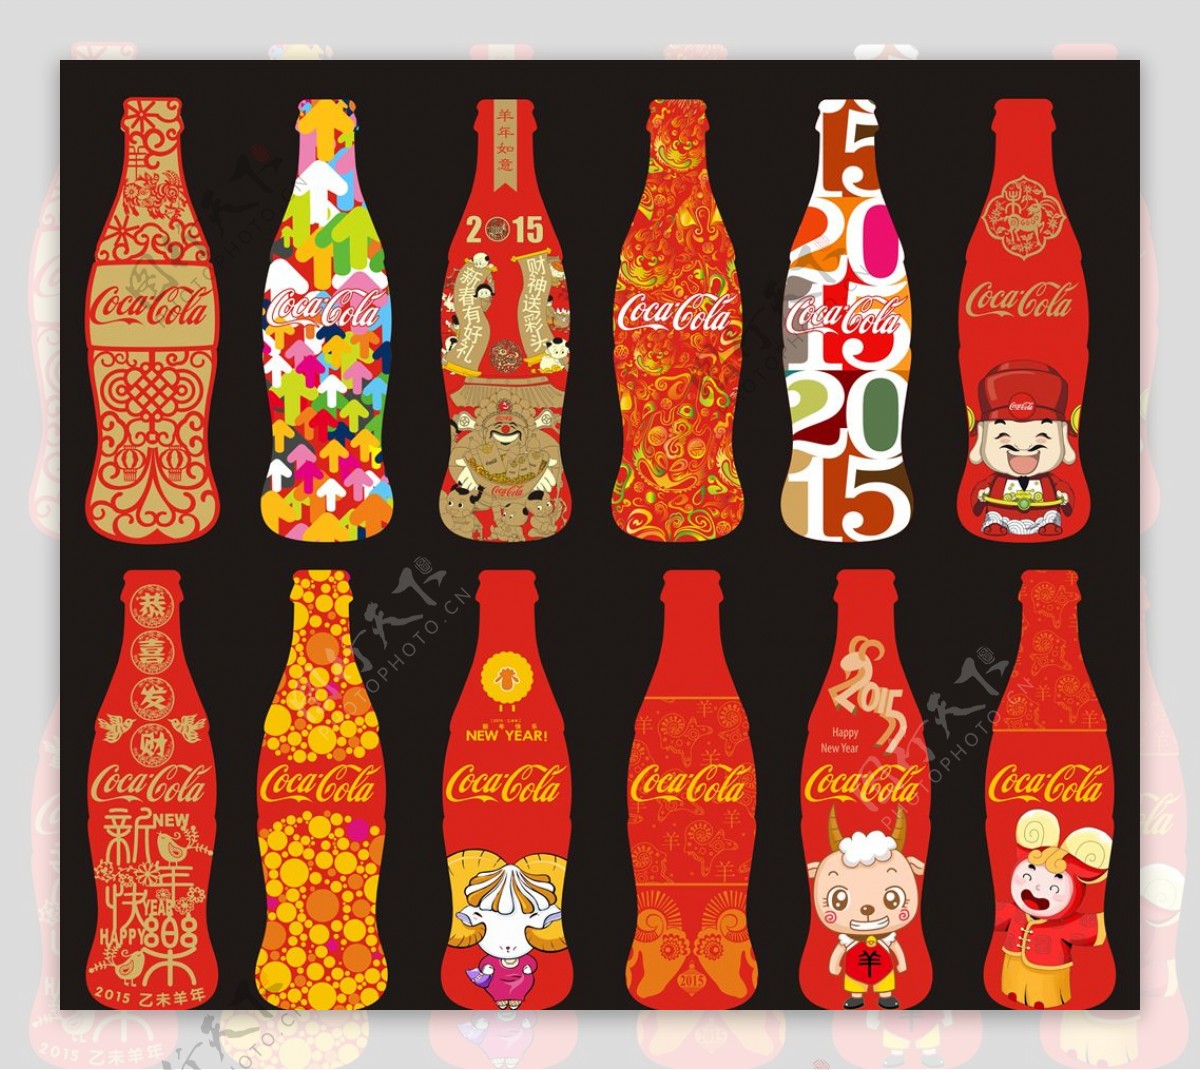 可口可乐创意瓶子设计